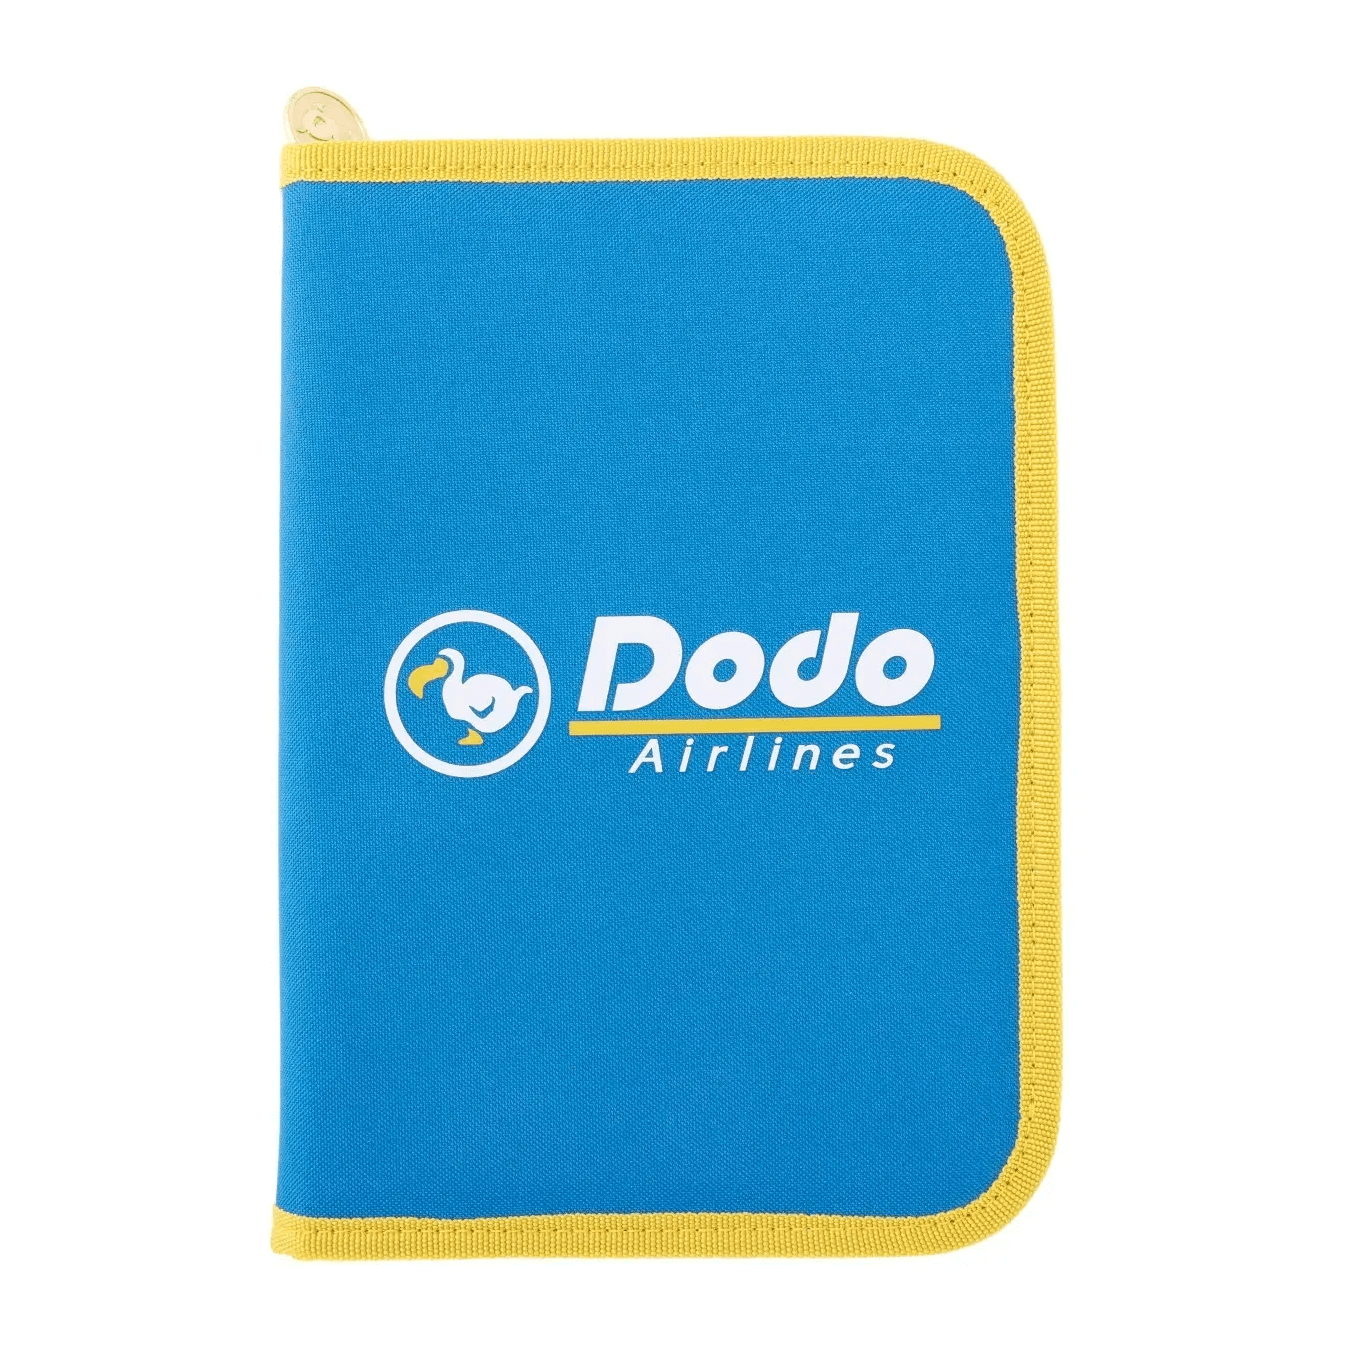 あつまれ Animal Crossing Dodo Airlines マルチケースBOOK